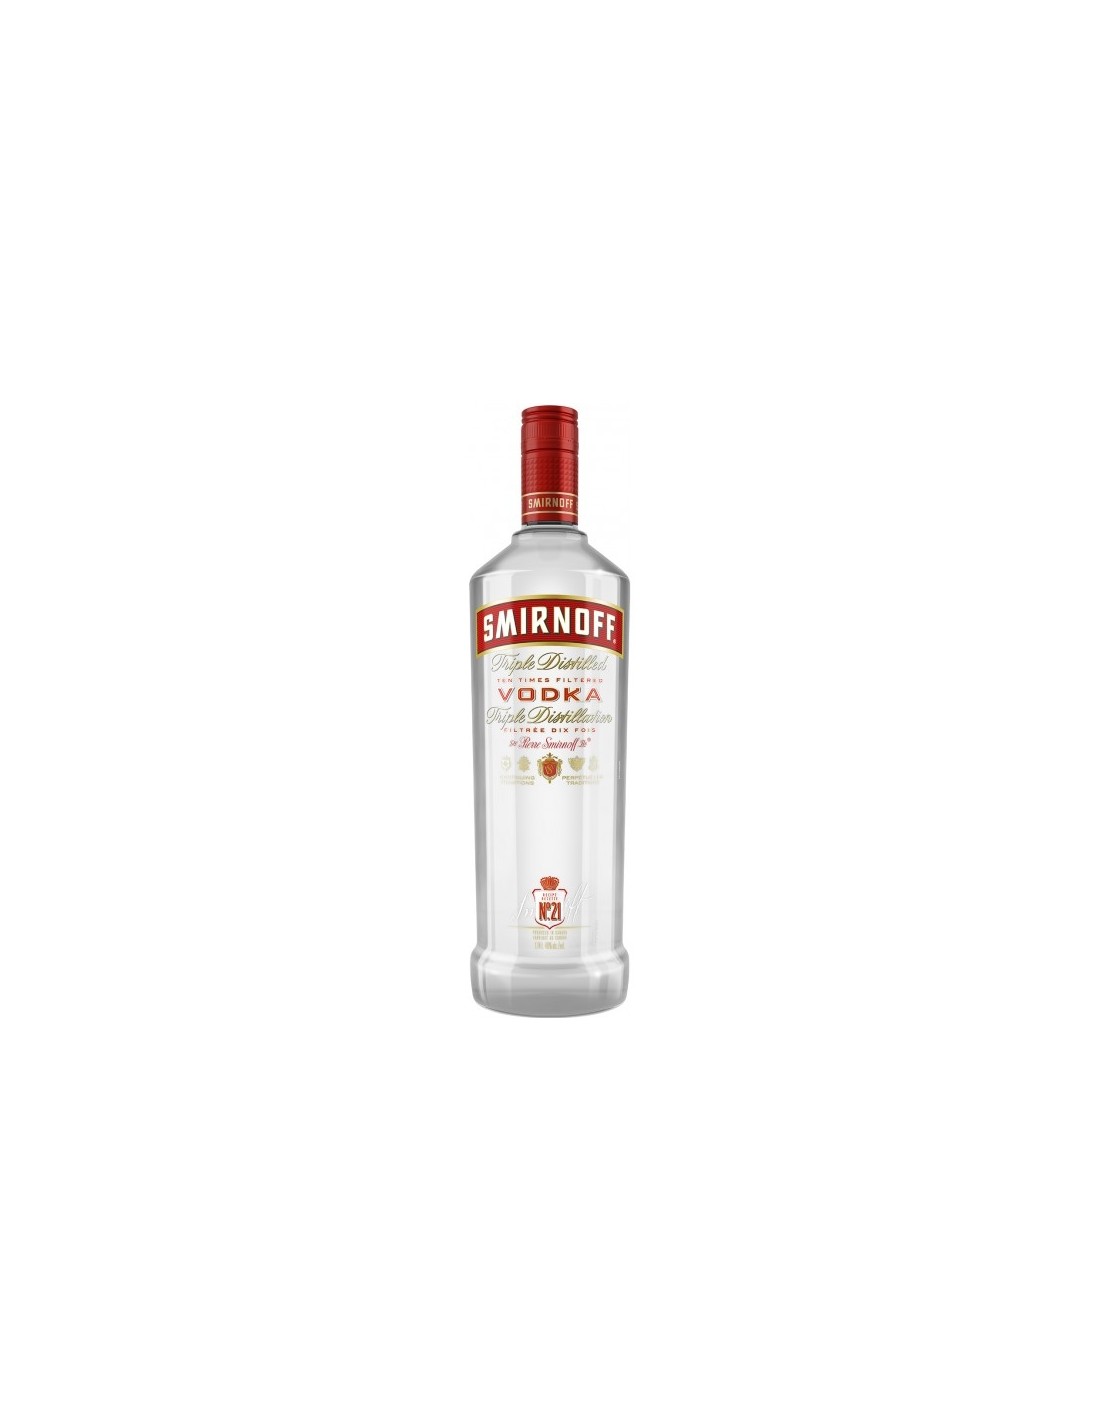 Vodca Smirnoff Red 1L, 40% alc., Rusia alcooldiscount.ro